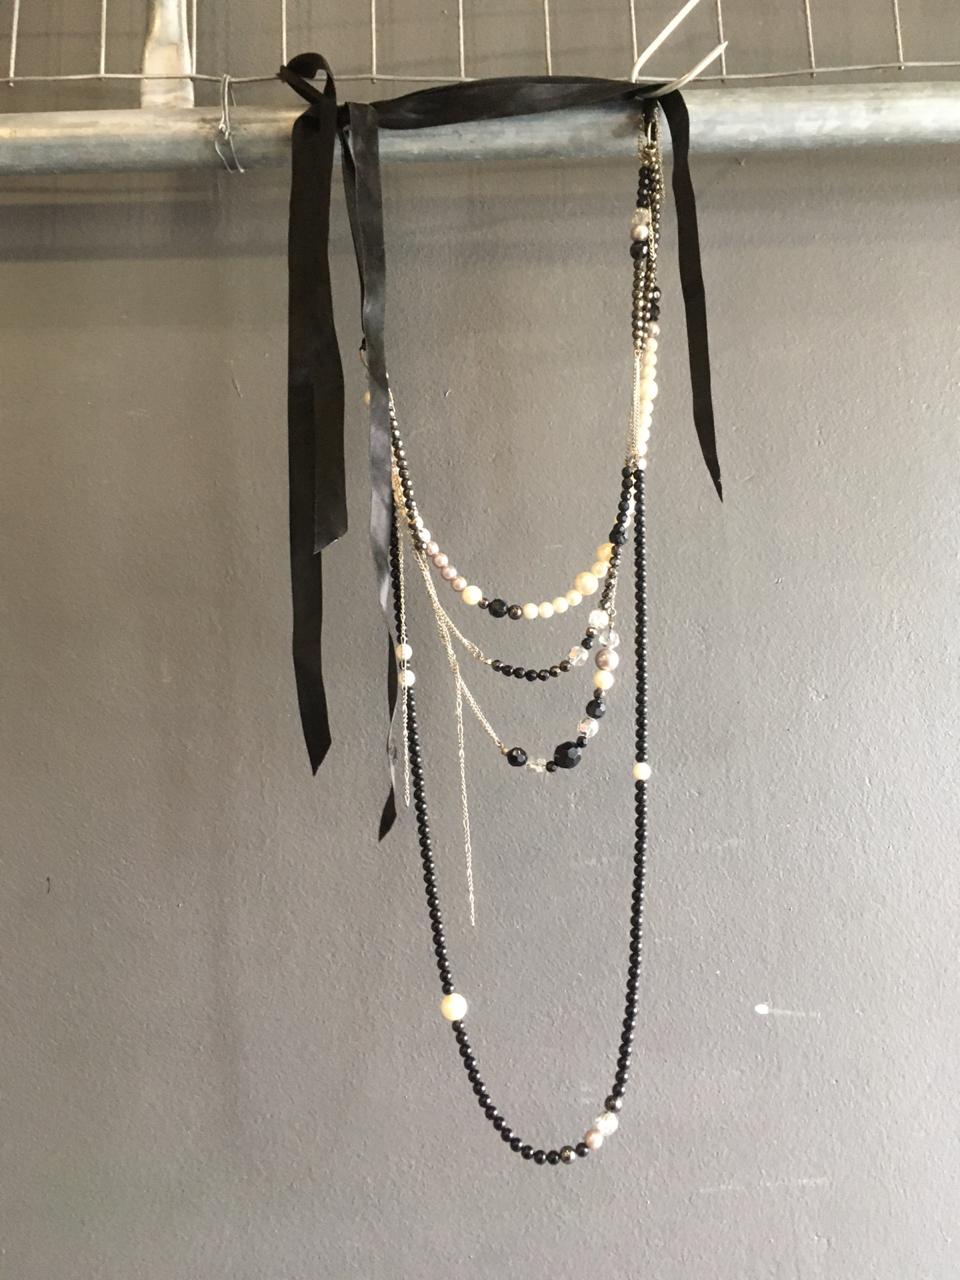 Black Beaded Necklace - 2ndhandwarehouse.com